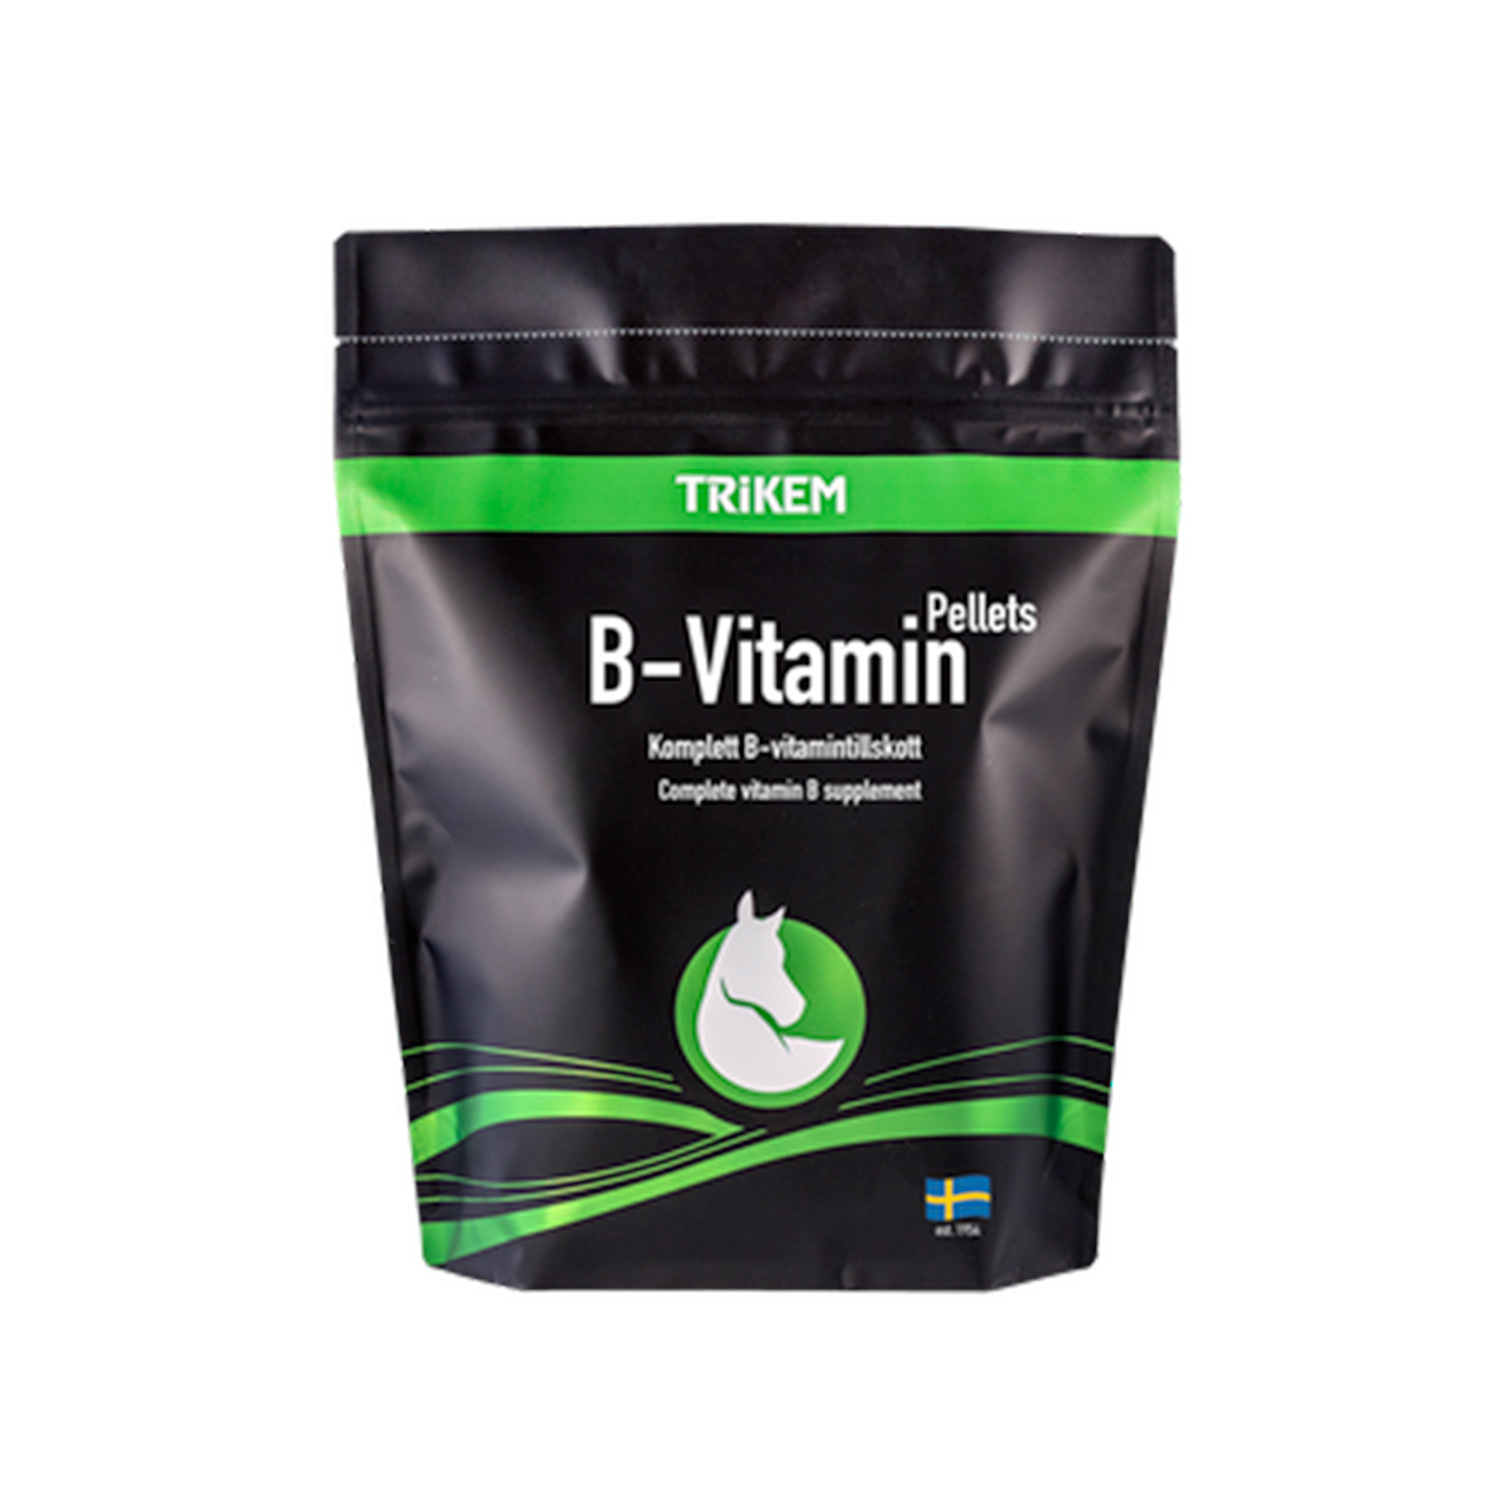 Vimital b-vitamin pellets 1kg